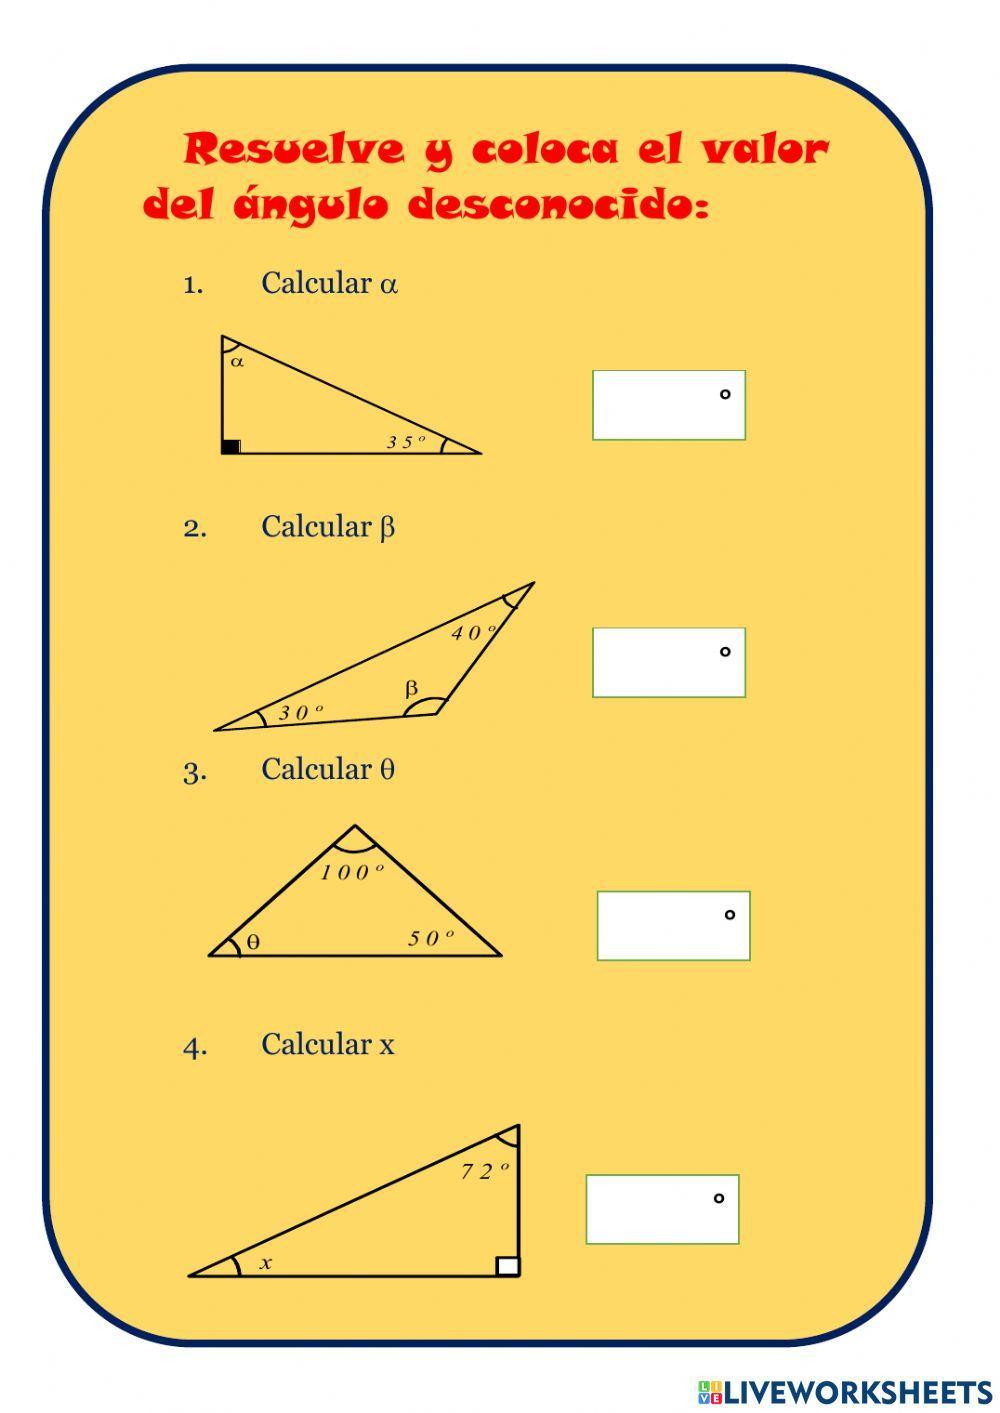 Suma de los ángulos internos de un triángulo